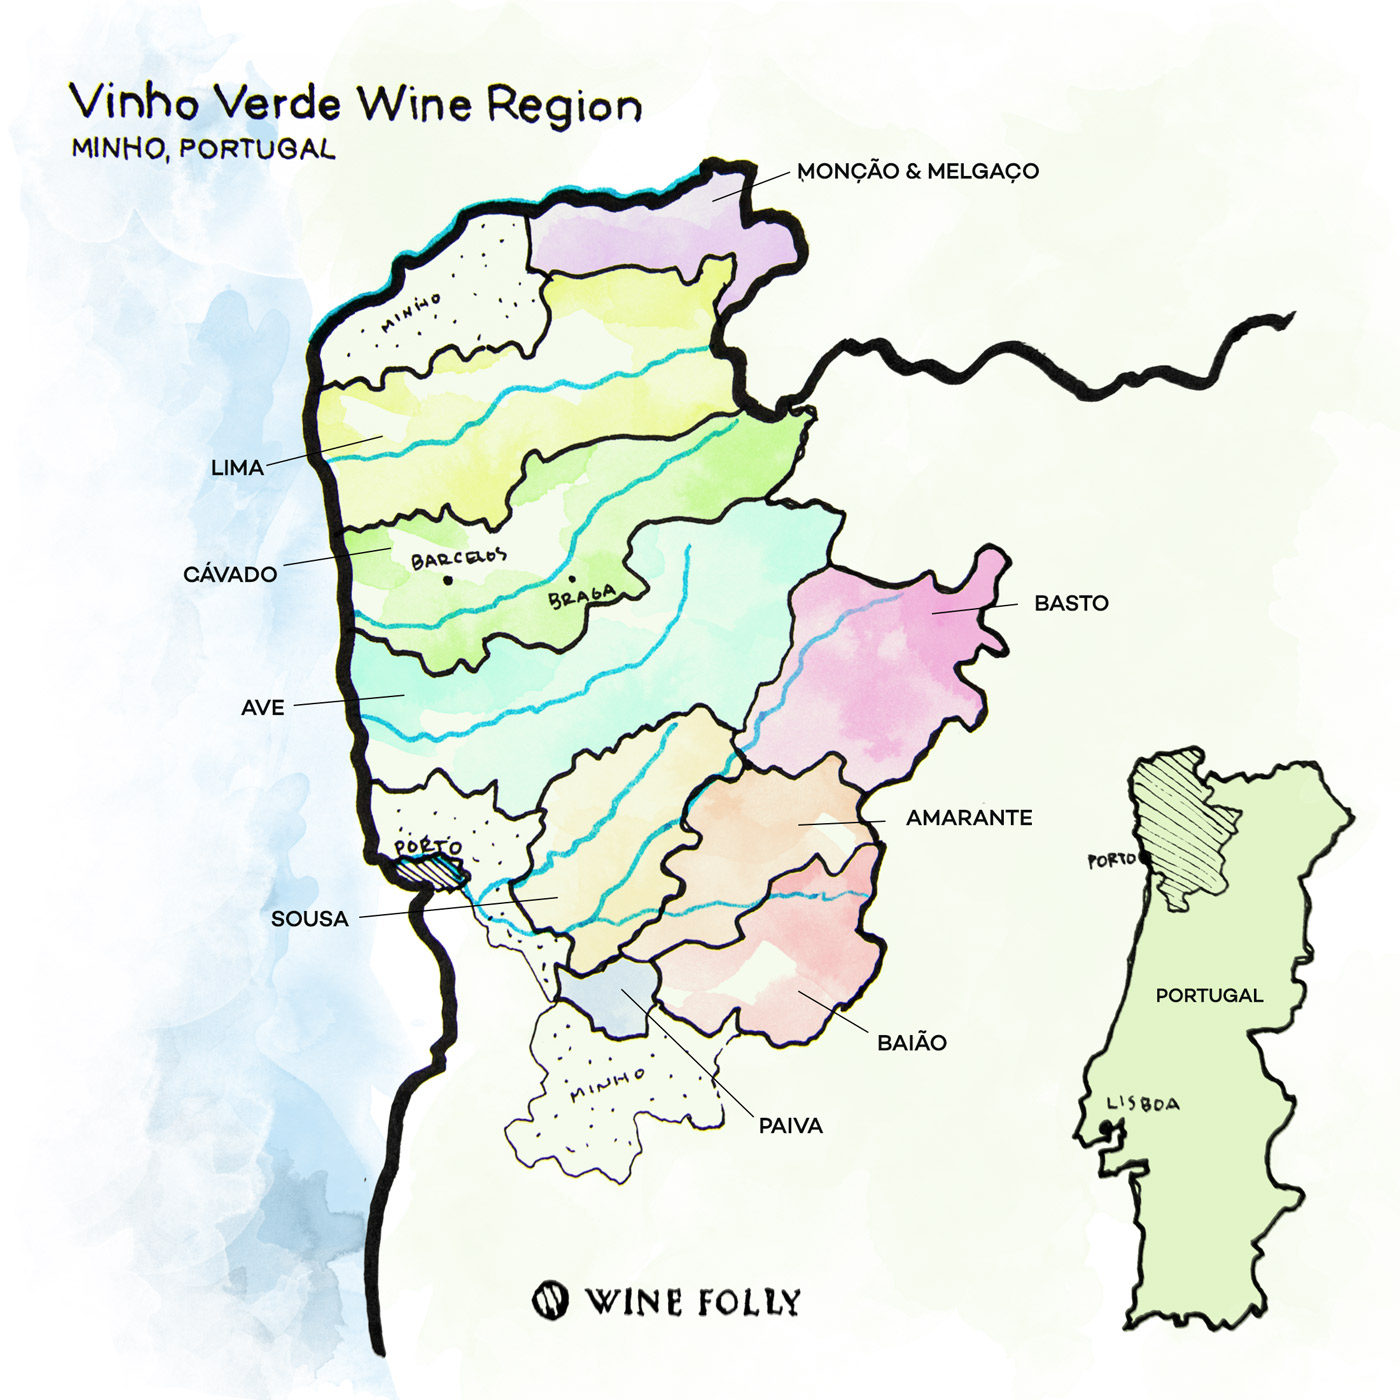 Vinho-Verde-Wine-Region-Minho-Portugal-WineFolly